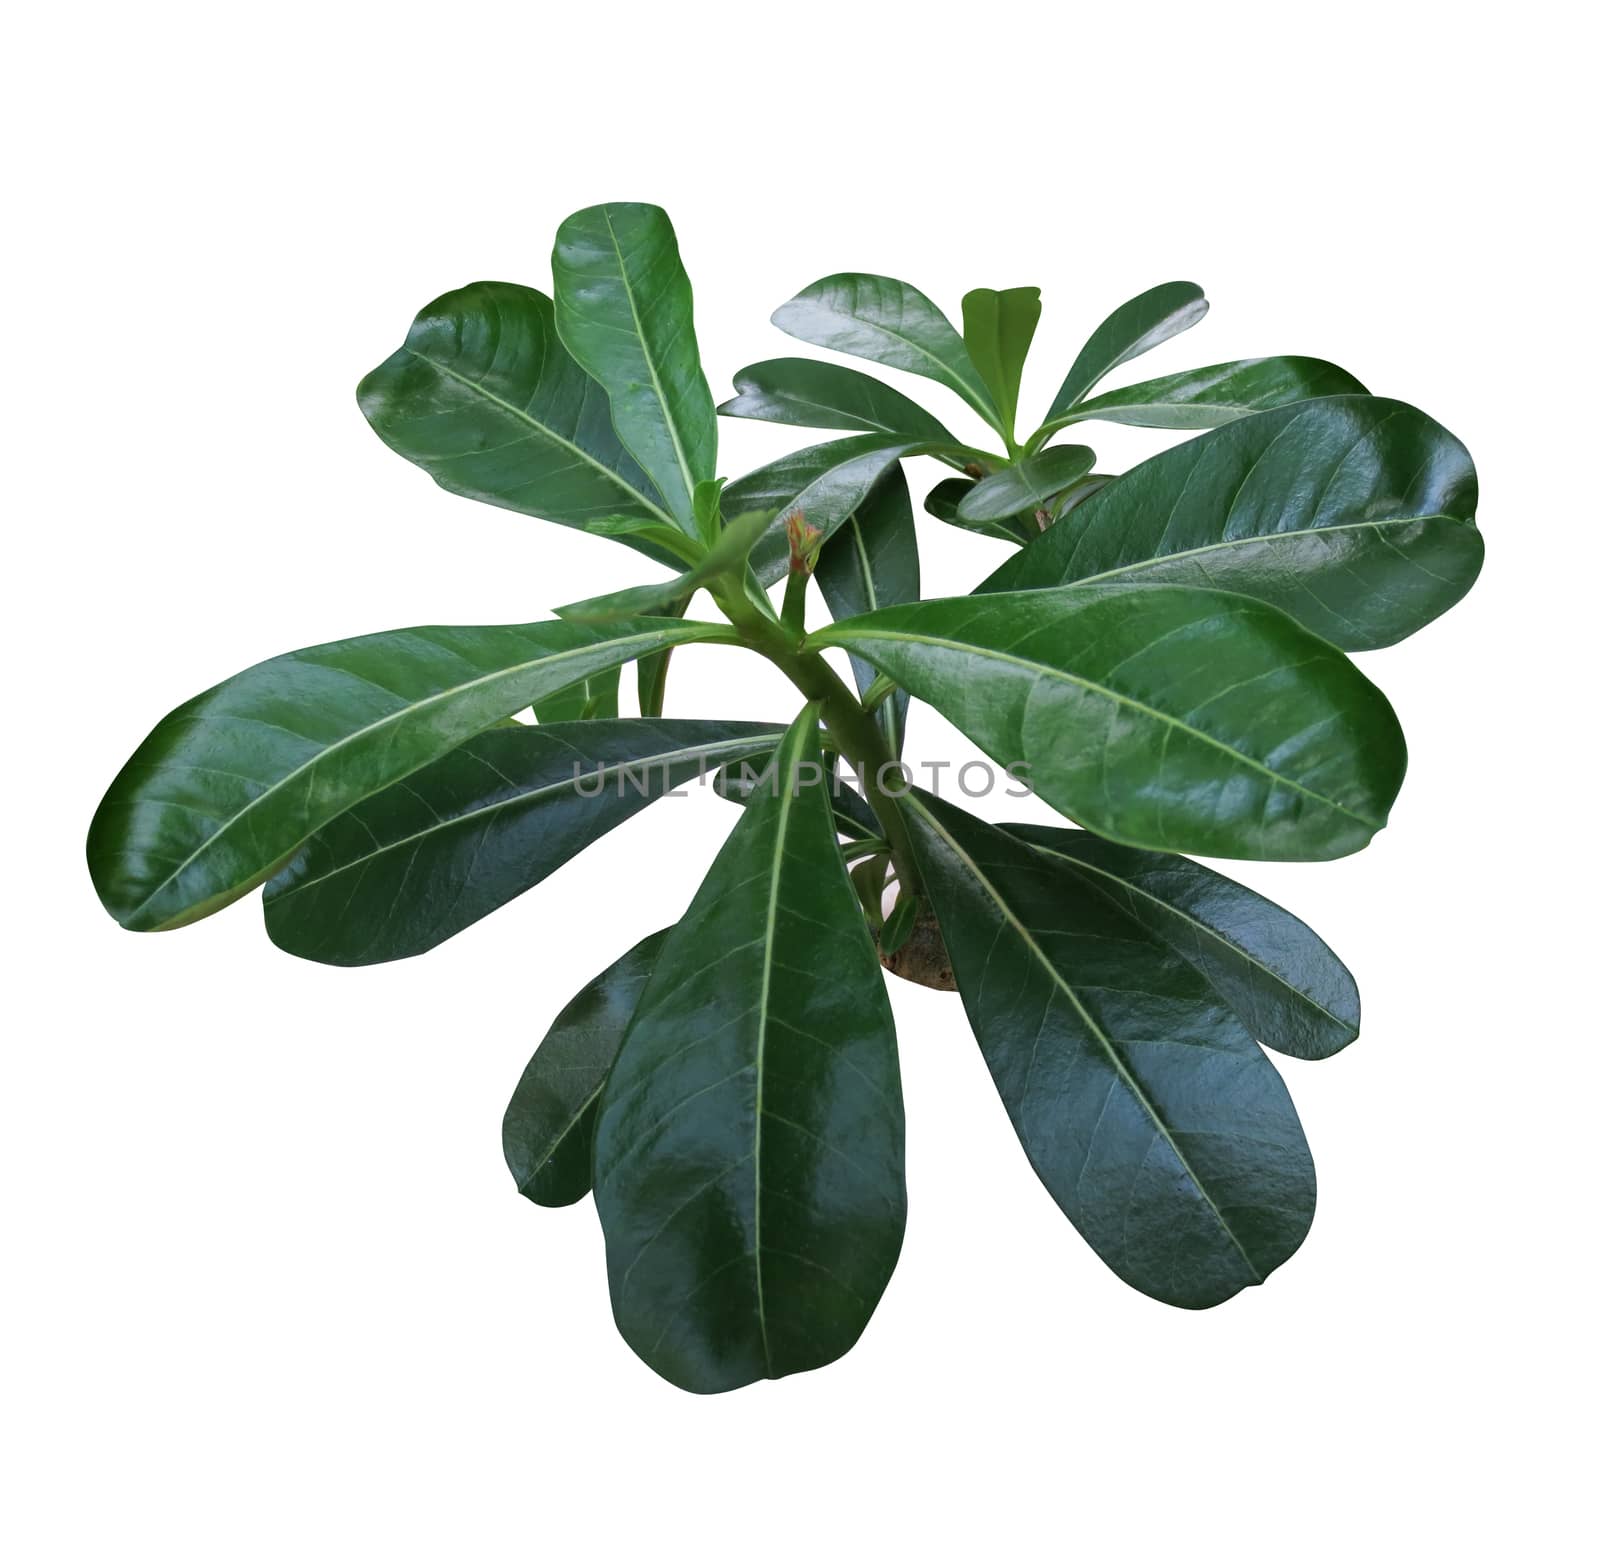 Adenium leaf isolated on white background